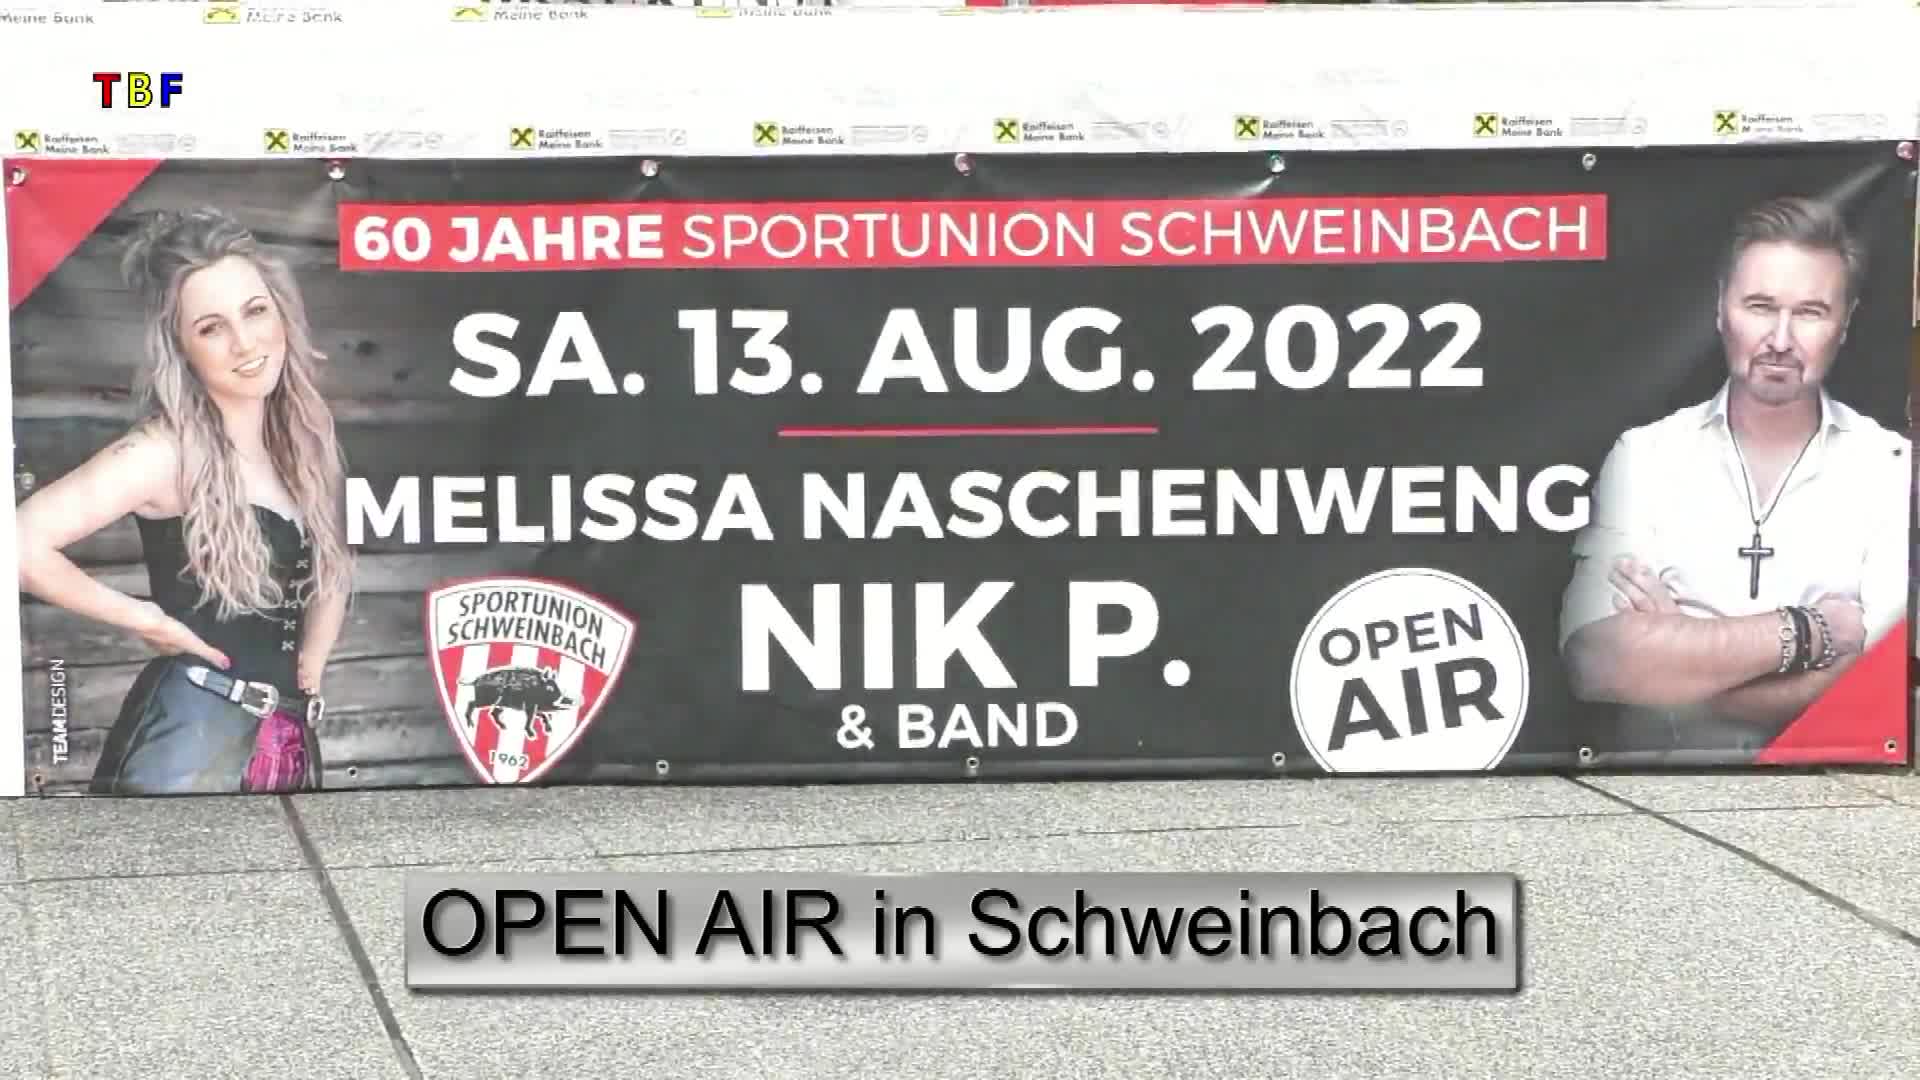 OPEN AIR in Schweinbach